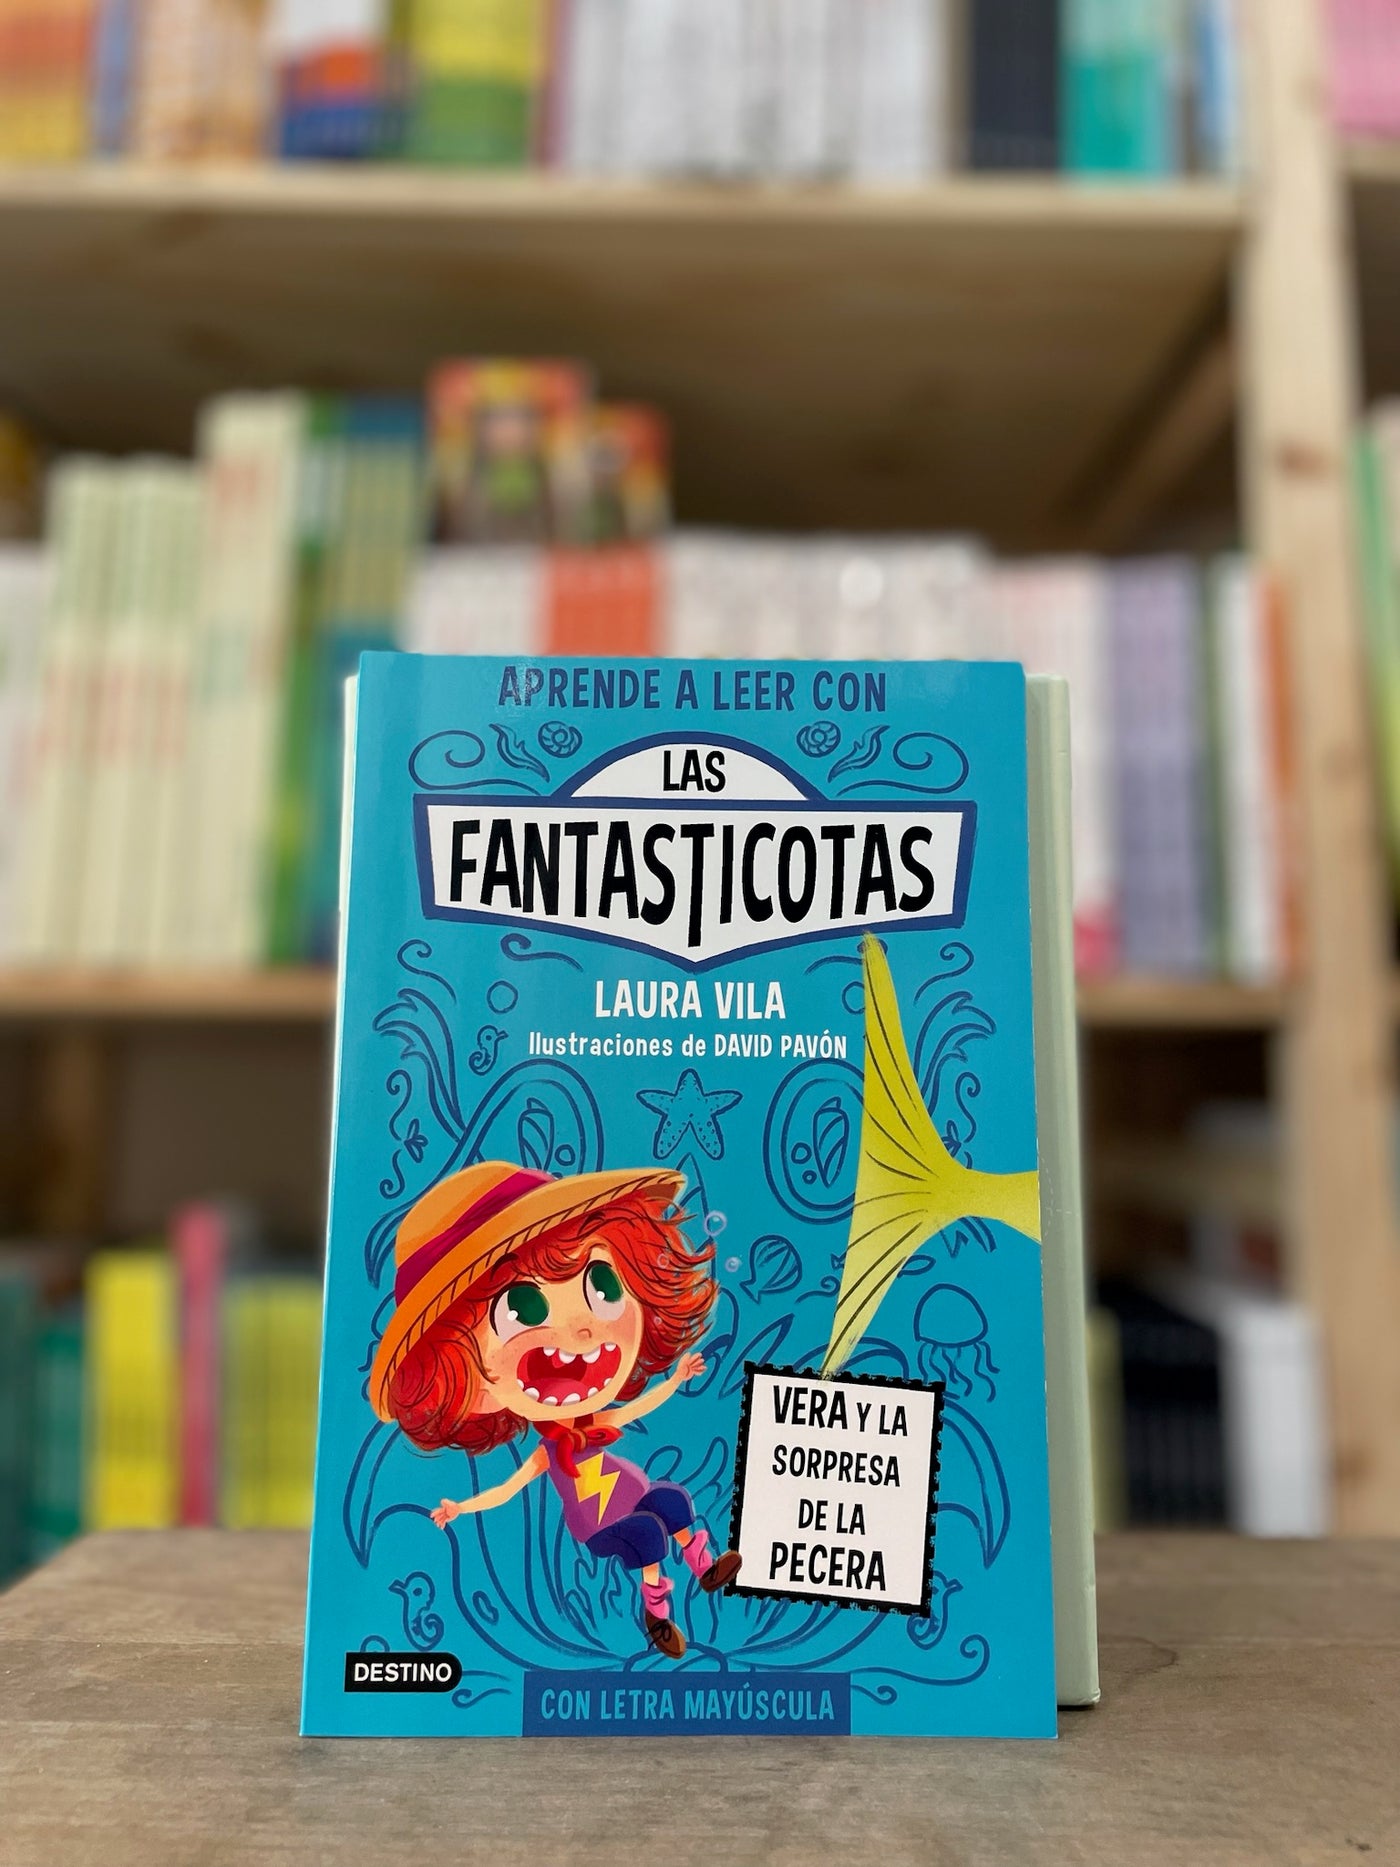 Aprender a leer con Los Fantasticotas 1 - Vera y la sorpresa de la pecera